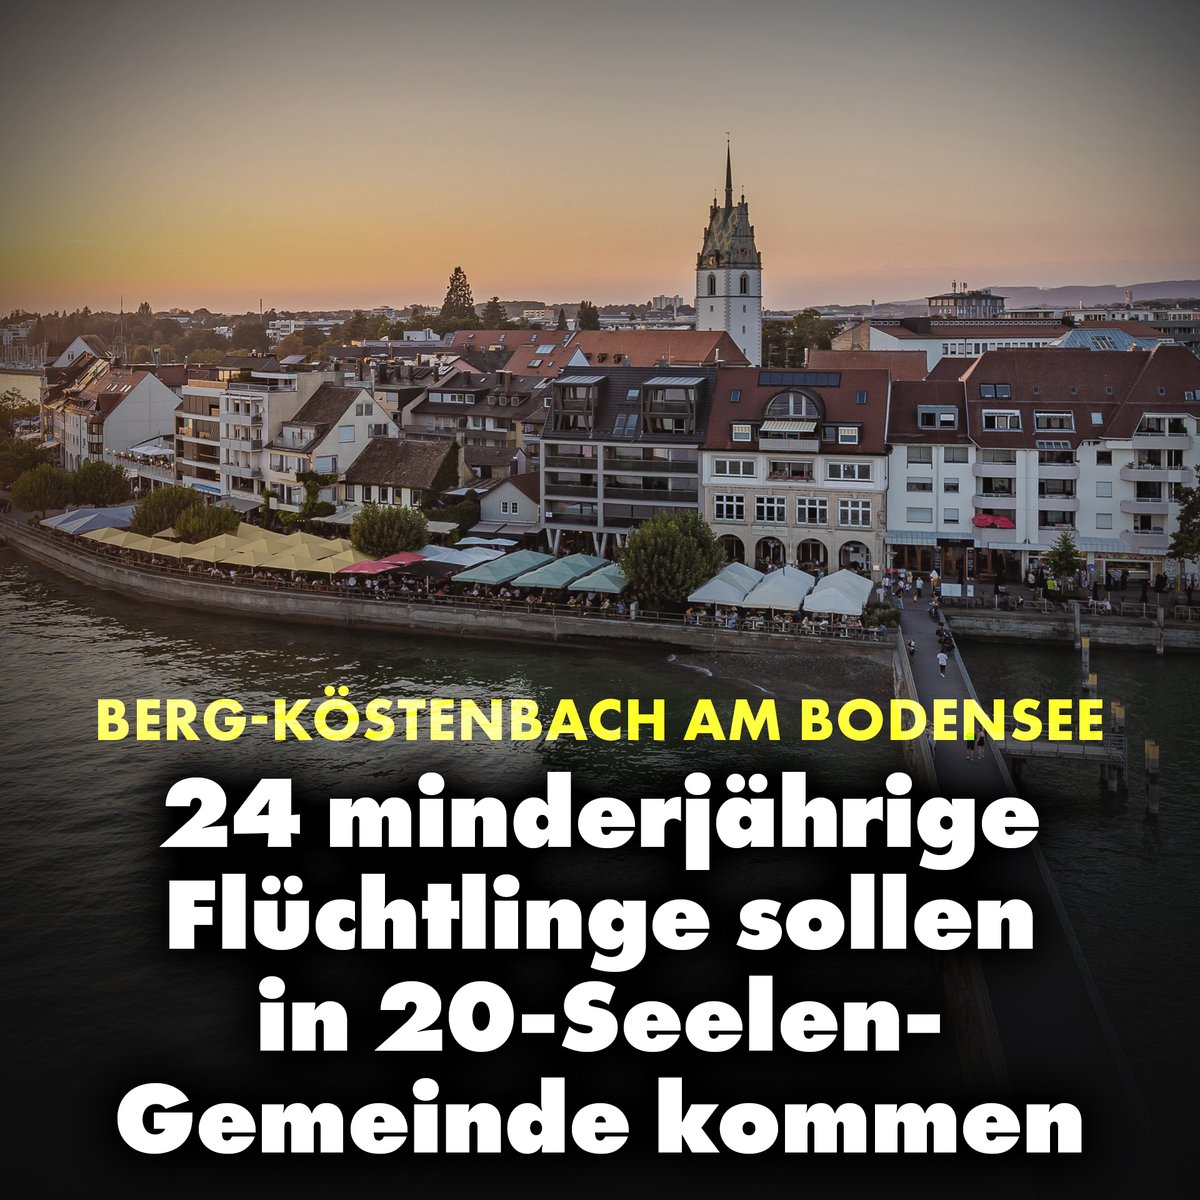 In der Gemeinde Berg-Köstenbach im Kreis Friedrichshafen am Bodensee sollen 24 unbegleitete minderjährige Flüchtlinge untergebracht werden – und das, obwohl in der Gemeinde selbst nur 20 Bewohner im Ort leben. nius.de/news/berg-koes…